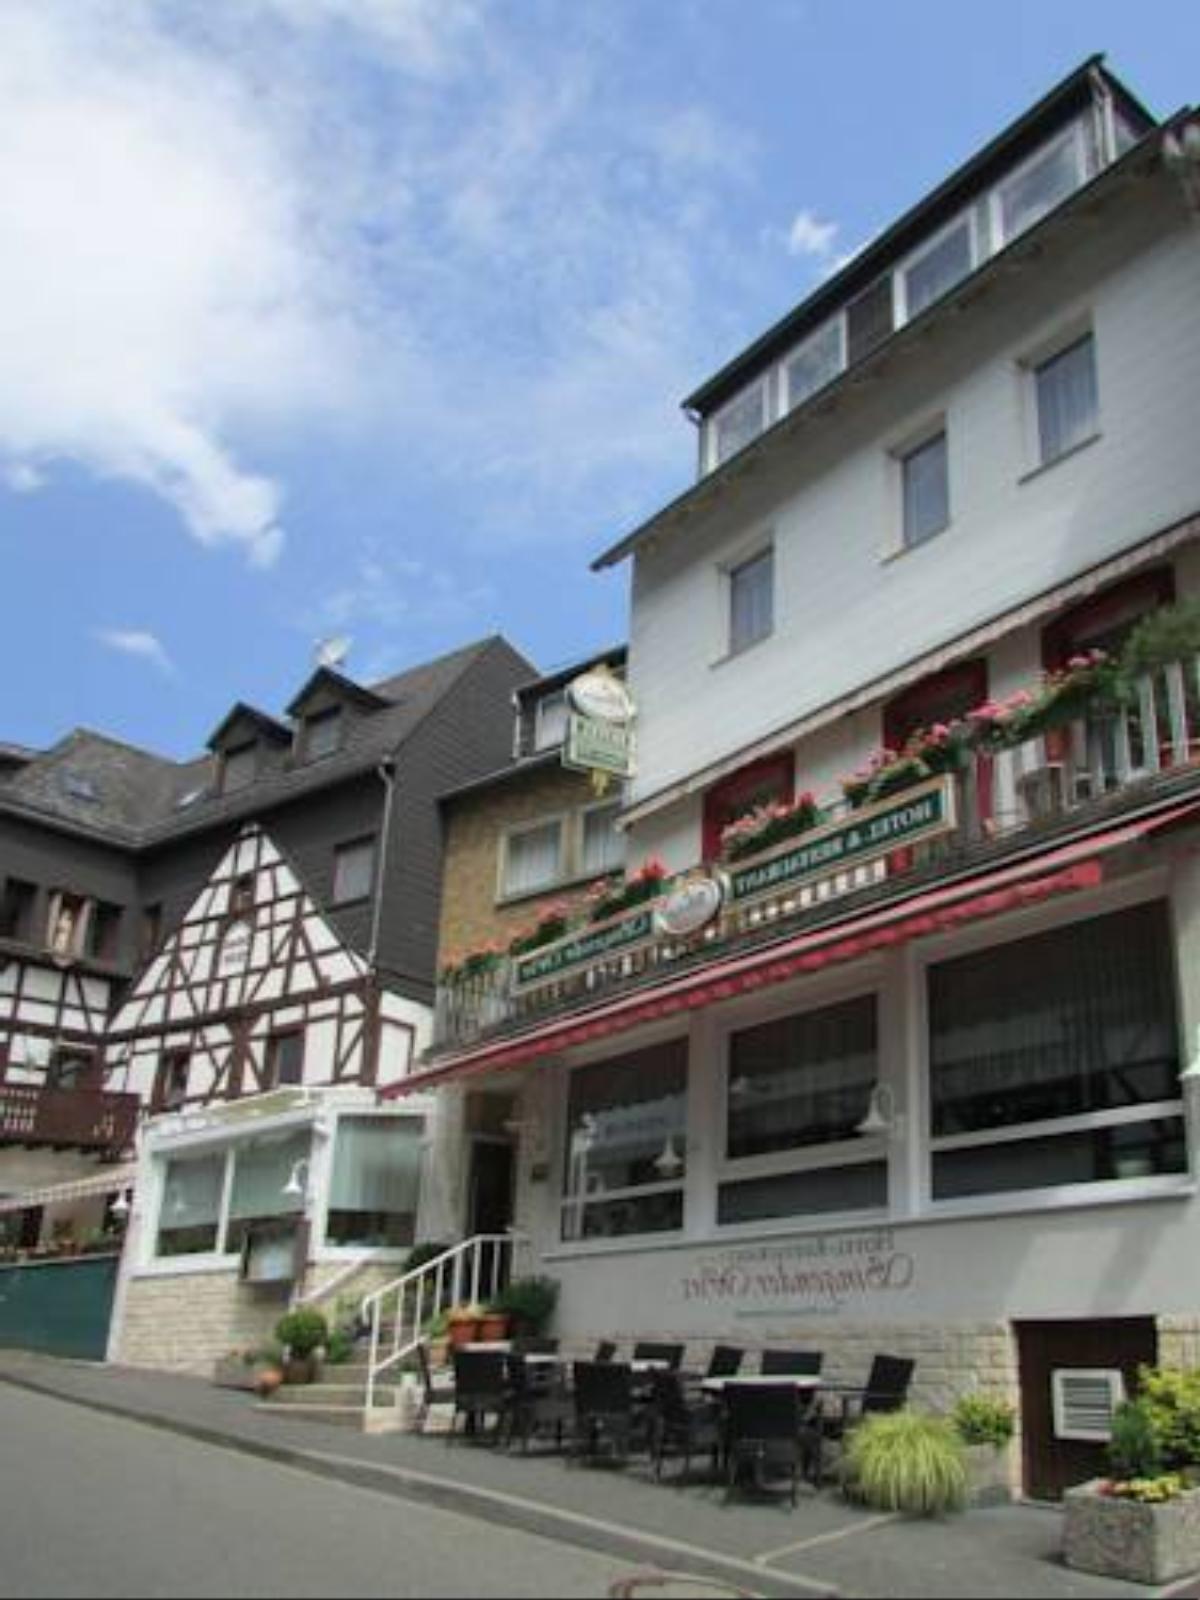 Hotel Singender Wirt Hotel Kamp-Bornhofen Germany